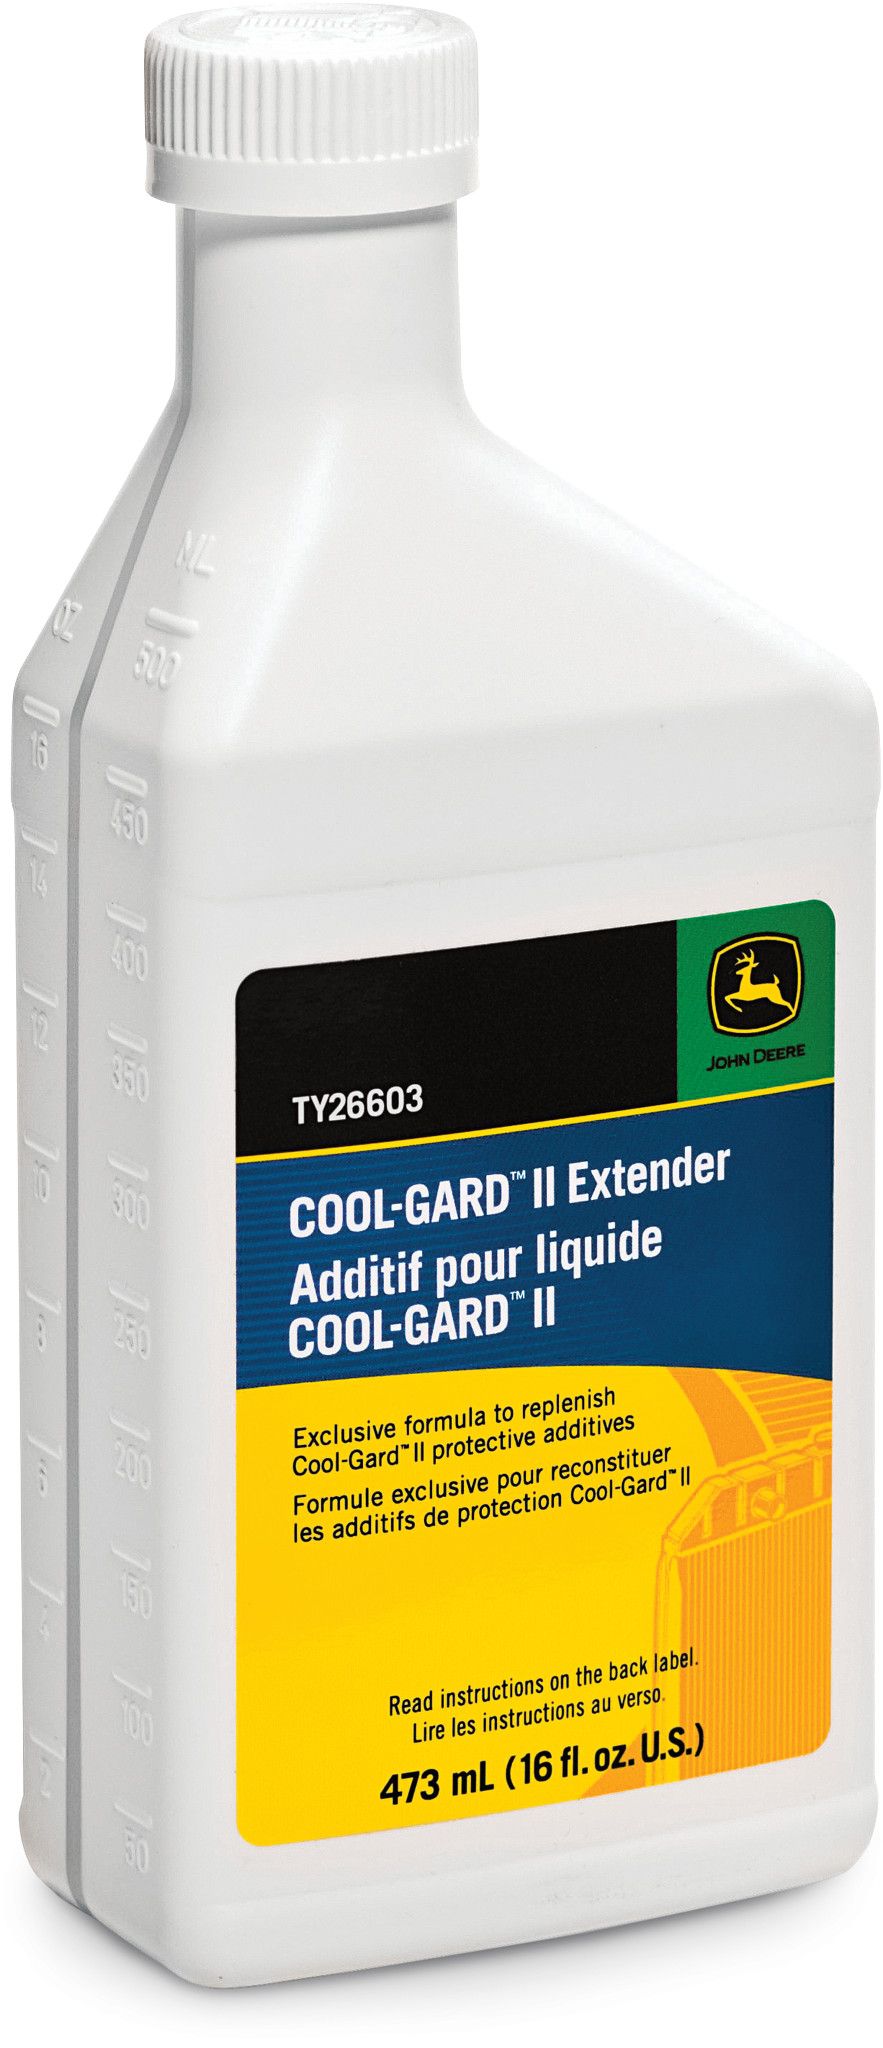 Cool-Gard II Extender - TY26603